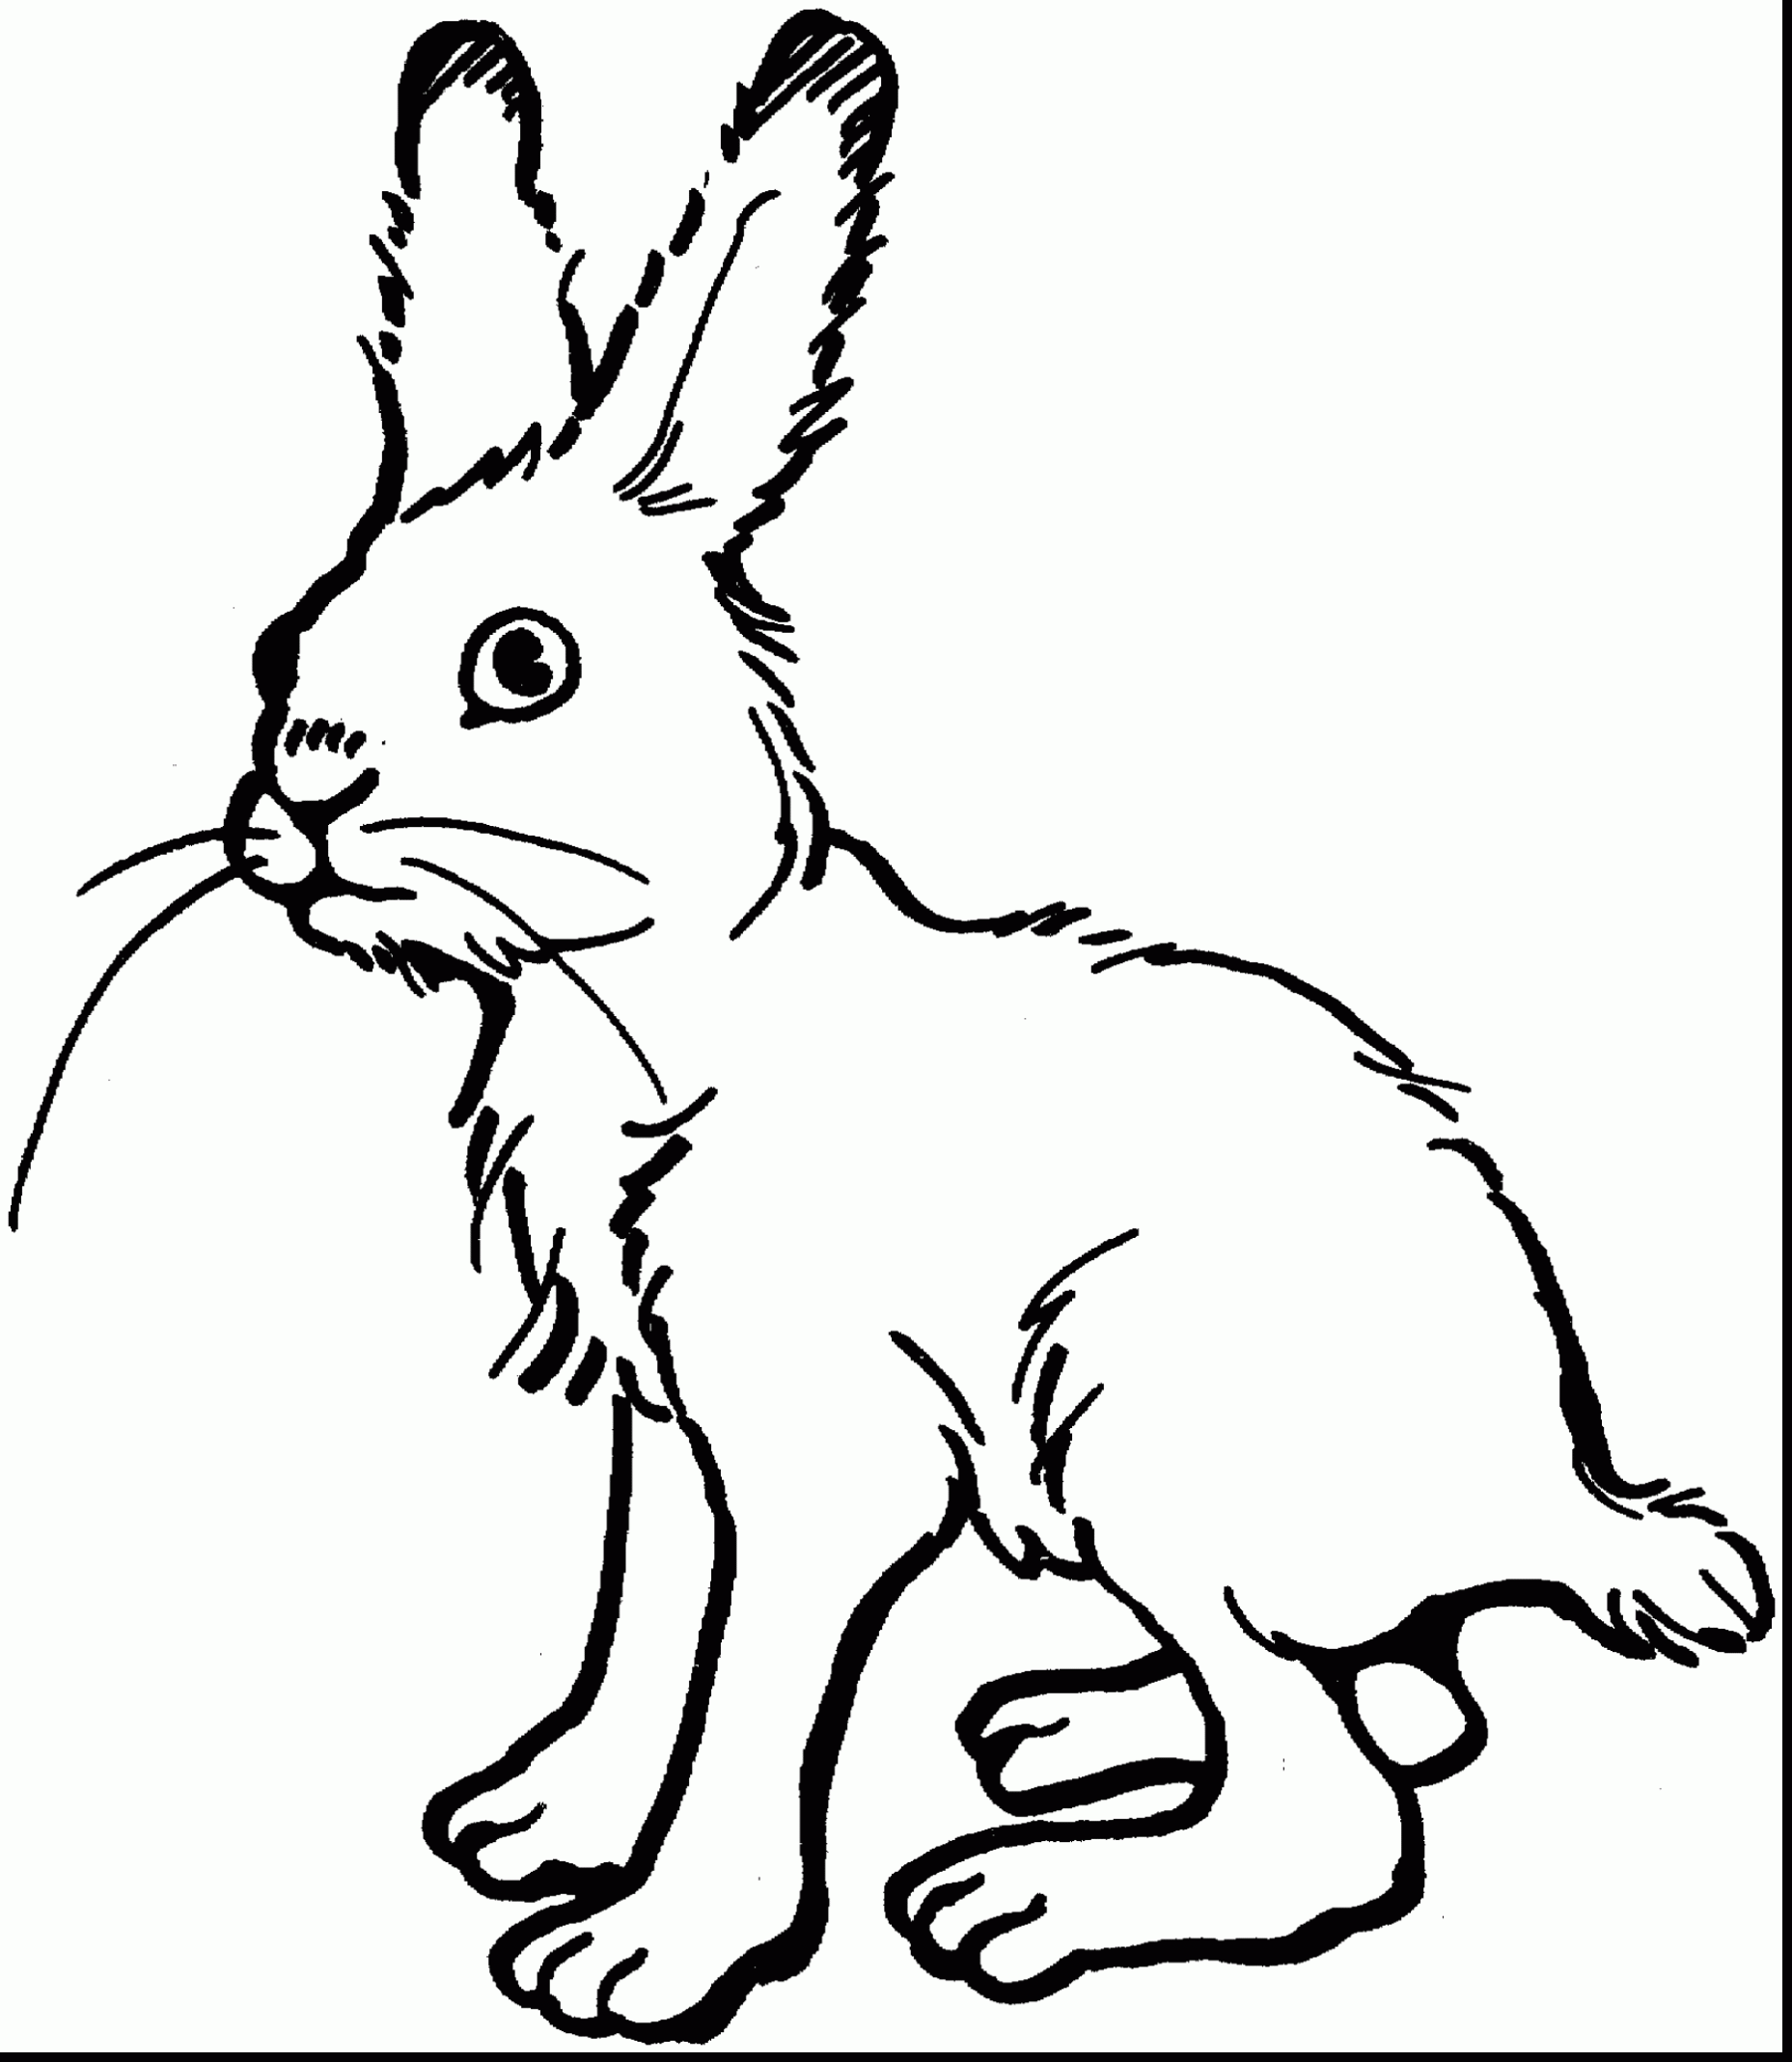 Jack Rabbit coloring #11, Download drawings